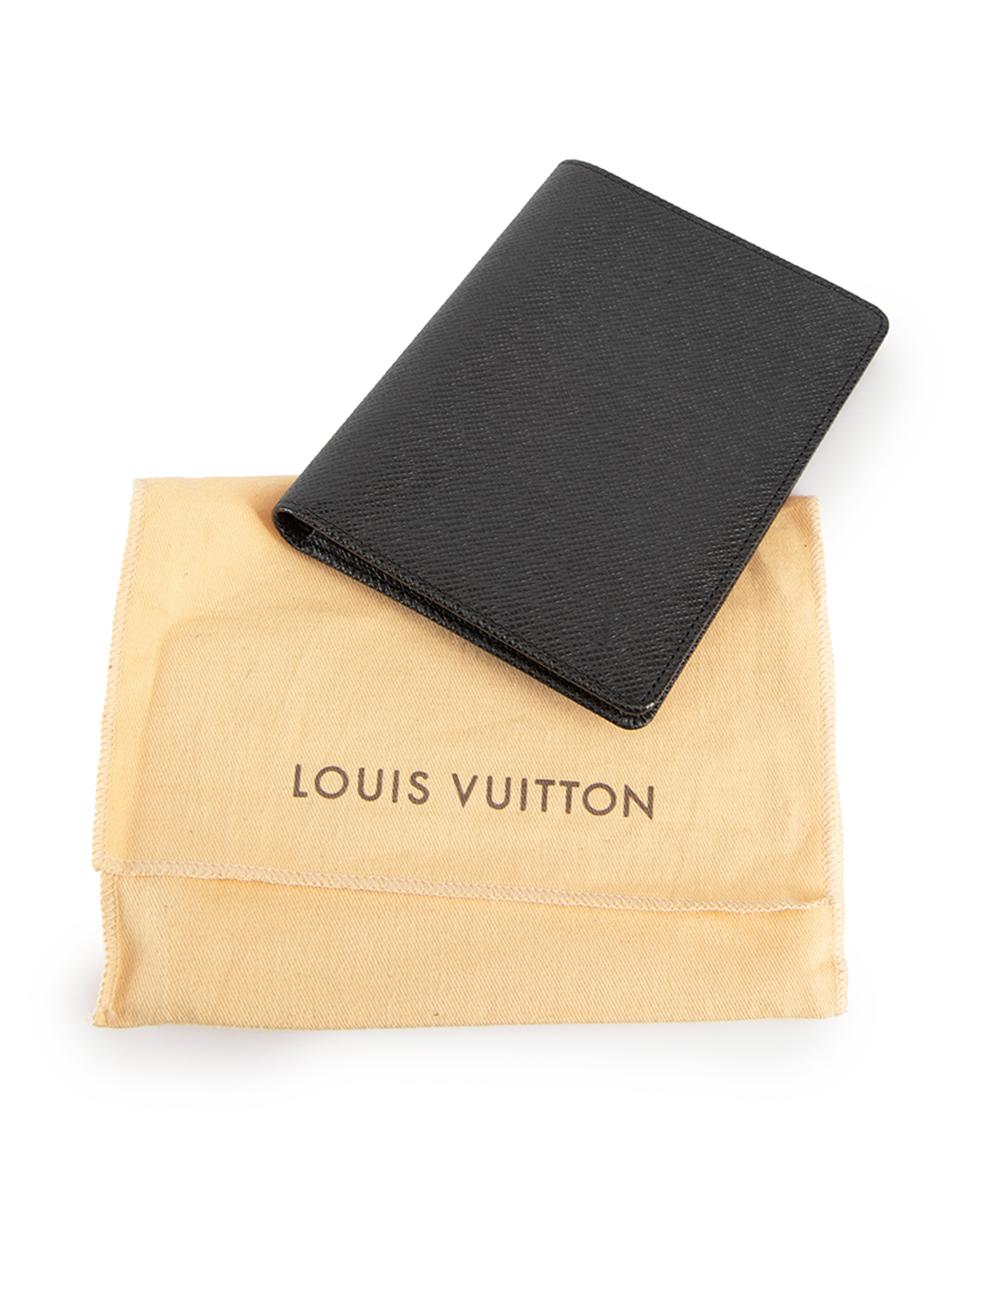 Louis Vuitton Black Leather Logo Passport Wallet For Sale 3